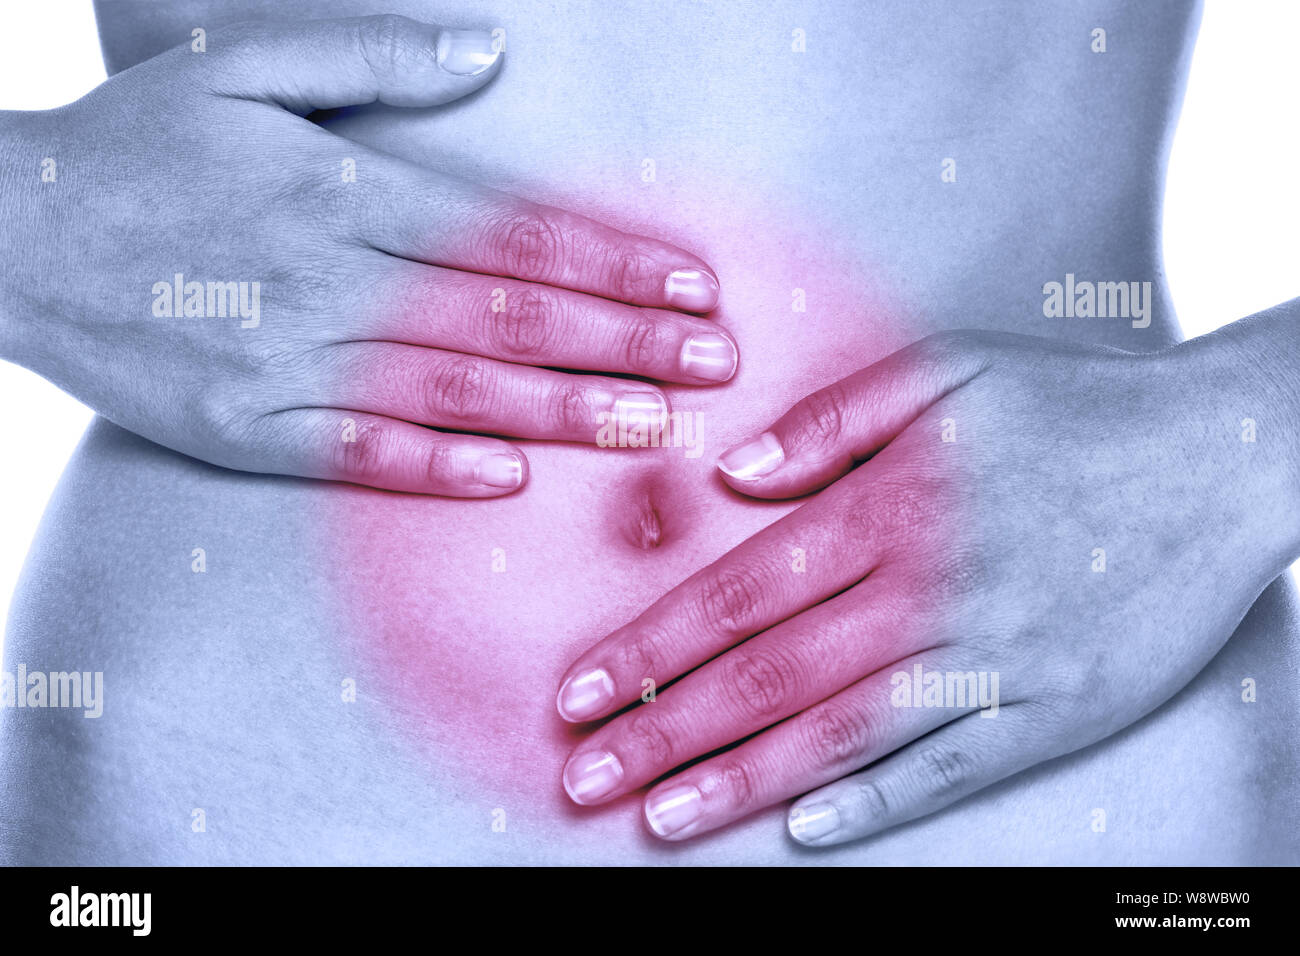 Magen unterleib schmerzen oder Schmerzen während der Menstruation. Frau mit Schmerzen im Unterleib. Gesundheit und Verdauung Konzept mit weiblichen Bauch und Händen. Stockfoto